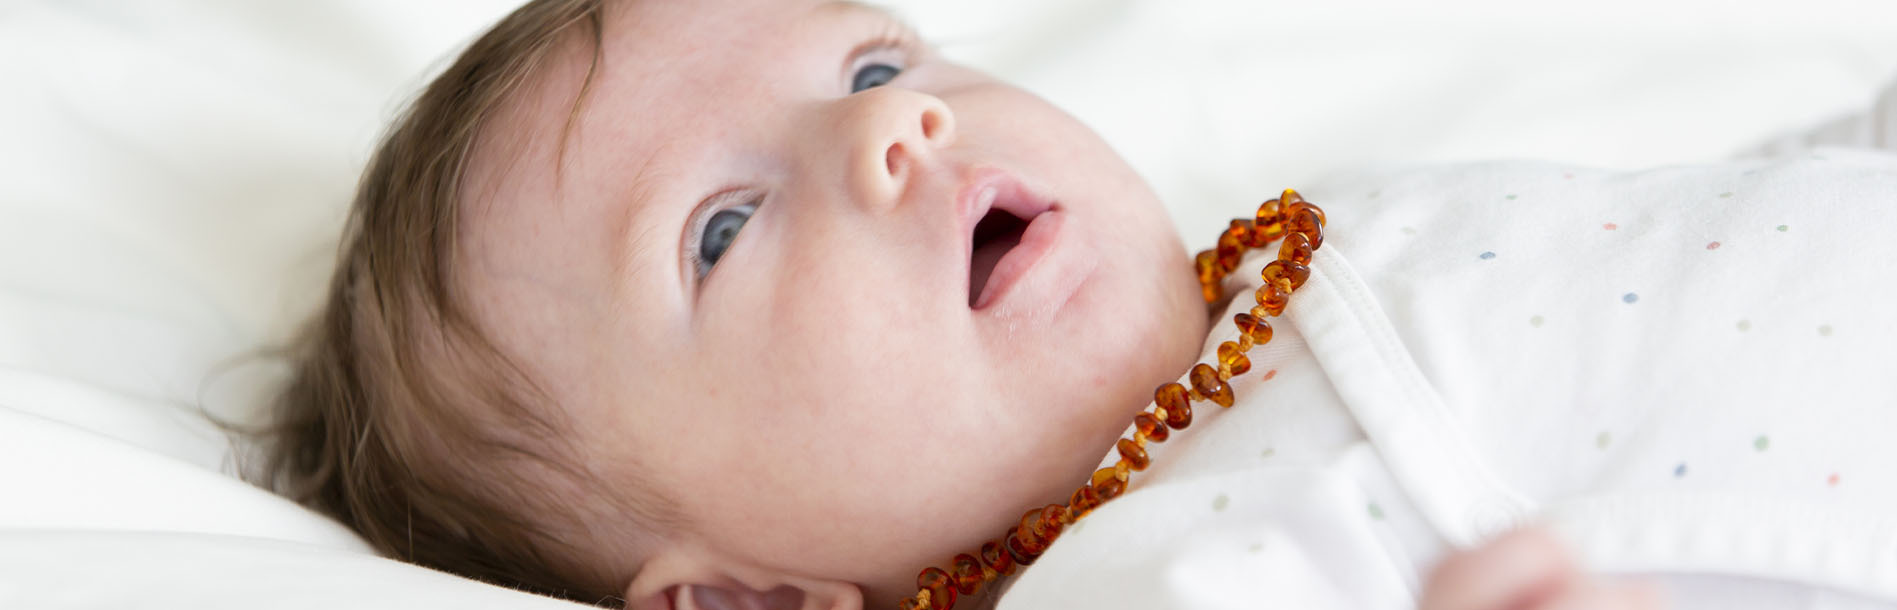 Colar de âmbar para bebê recém-nascido: vale a pena?